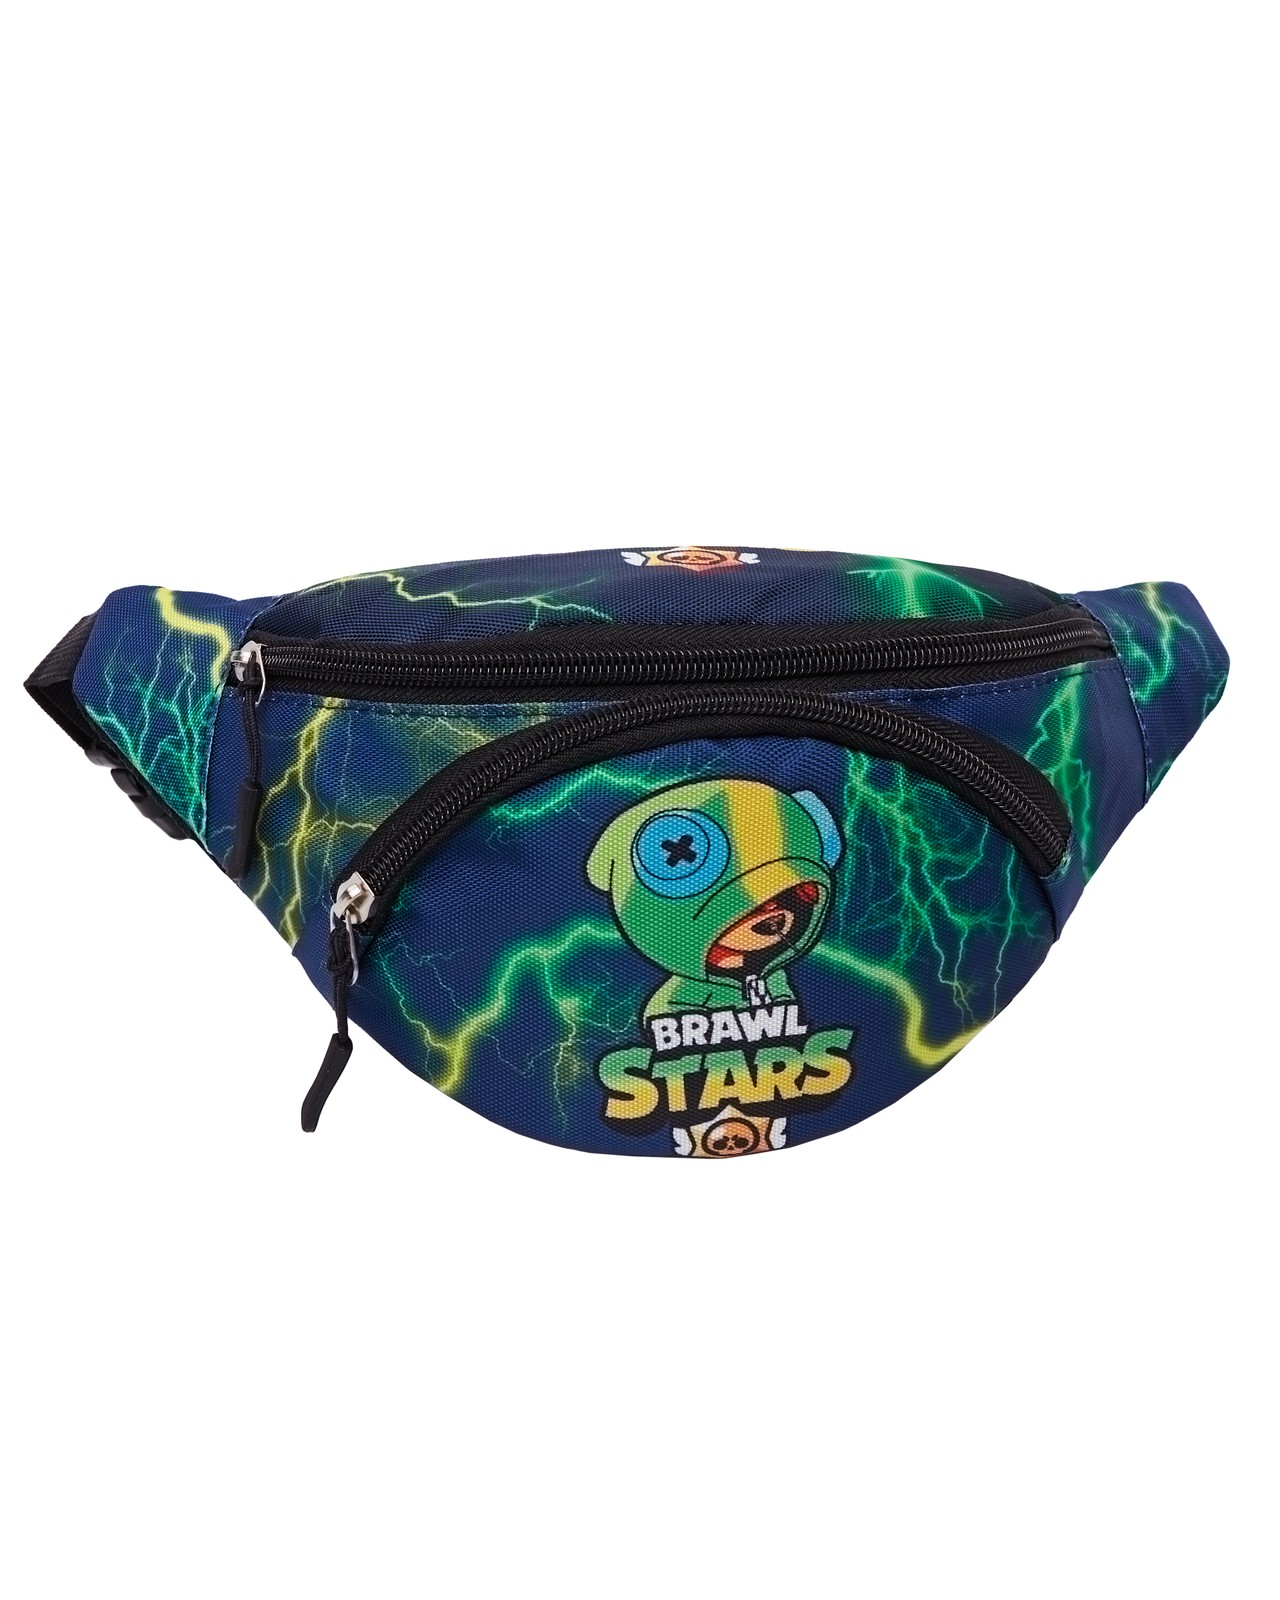 Детская сумка на пояс BAGS-ART Brawl St сине-зеленый молния альбом коллекционера mtgtrade 2x2 молния зеленый